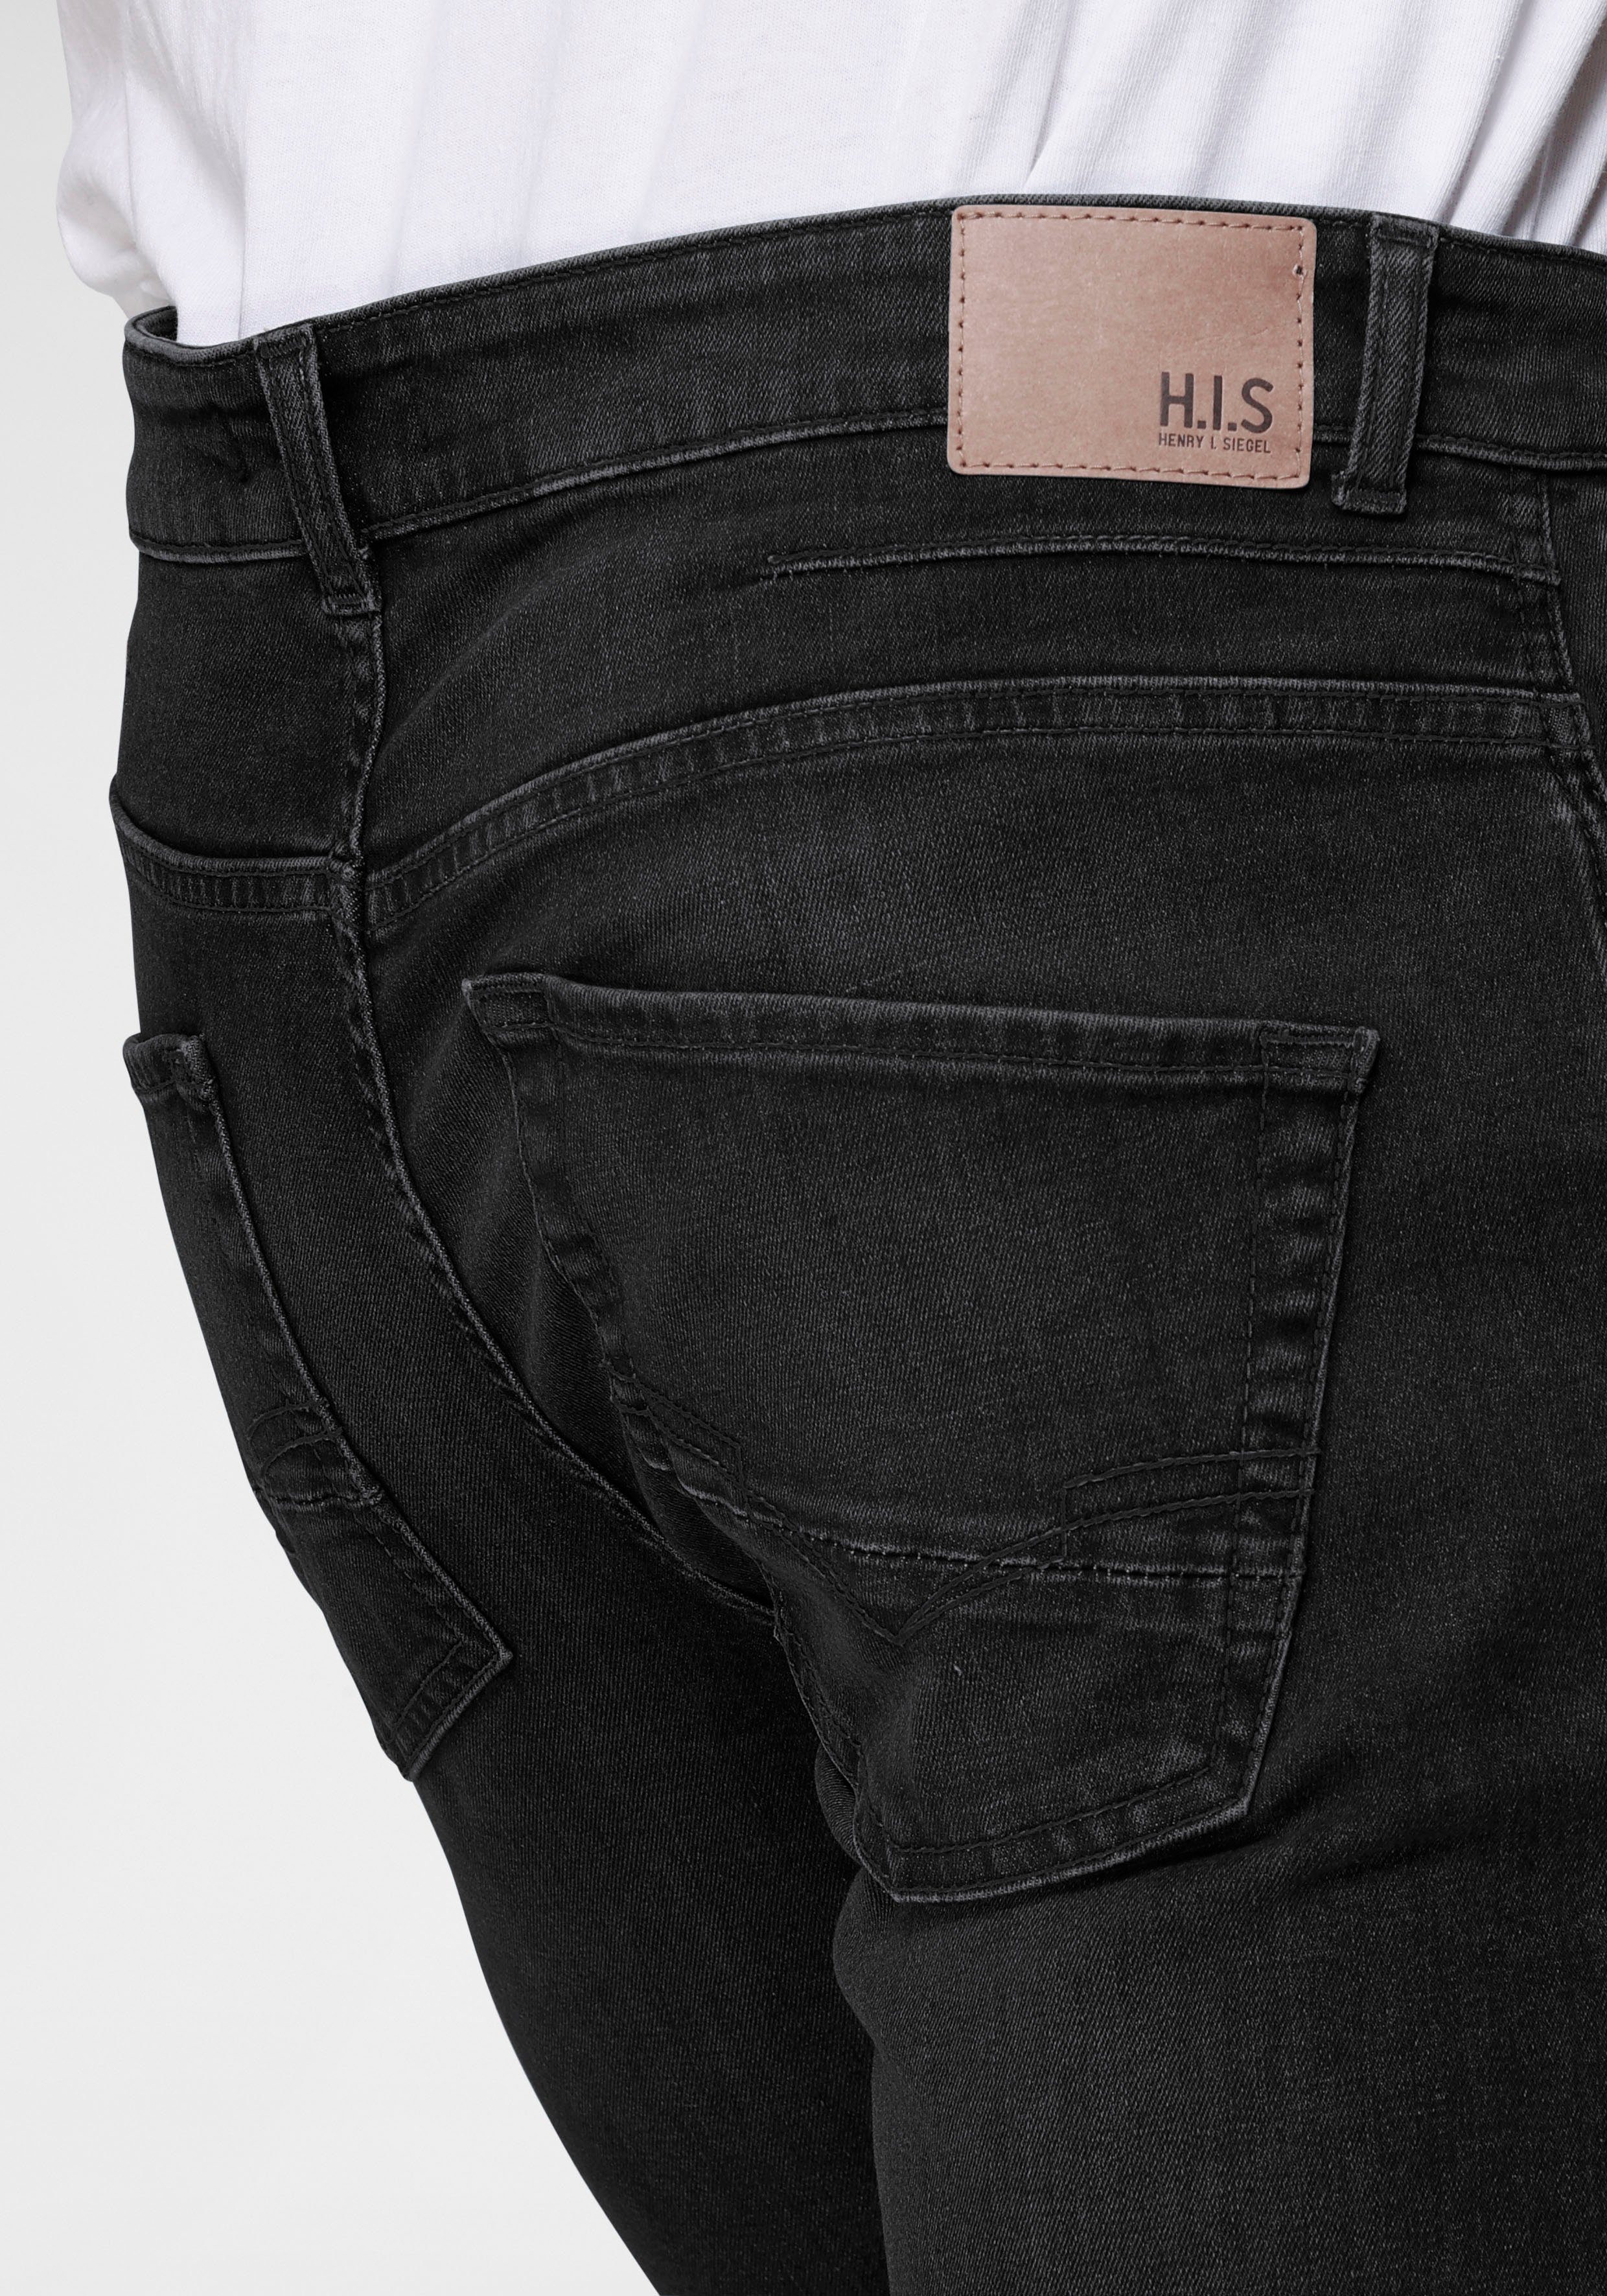 H.I.S Straight-Jeans Ökologische, Ozon Wash durch black-used Produktion wassersparende DALE